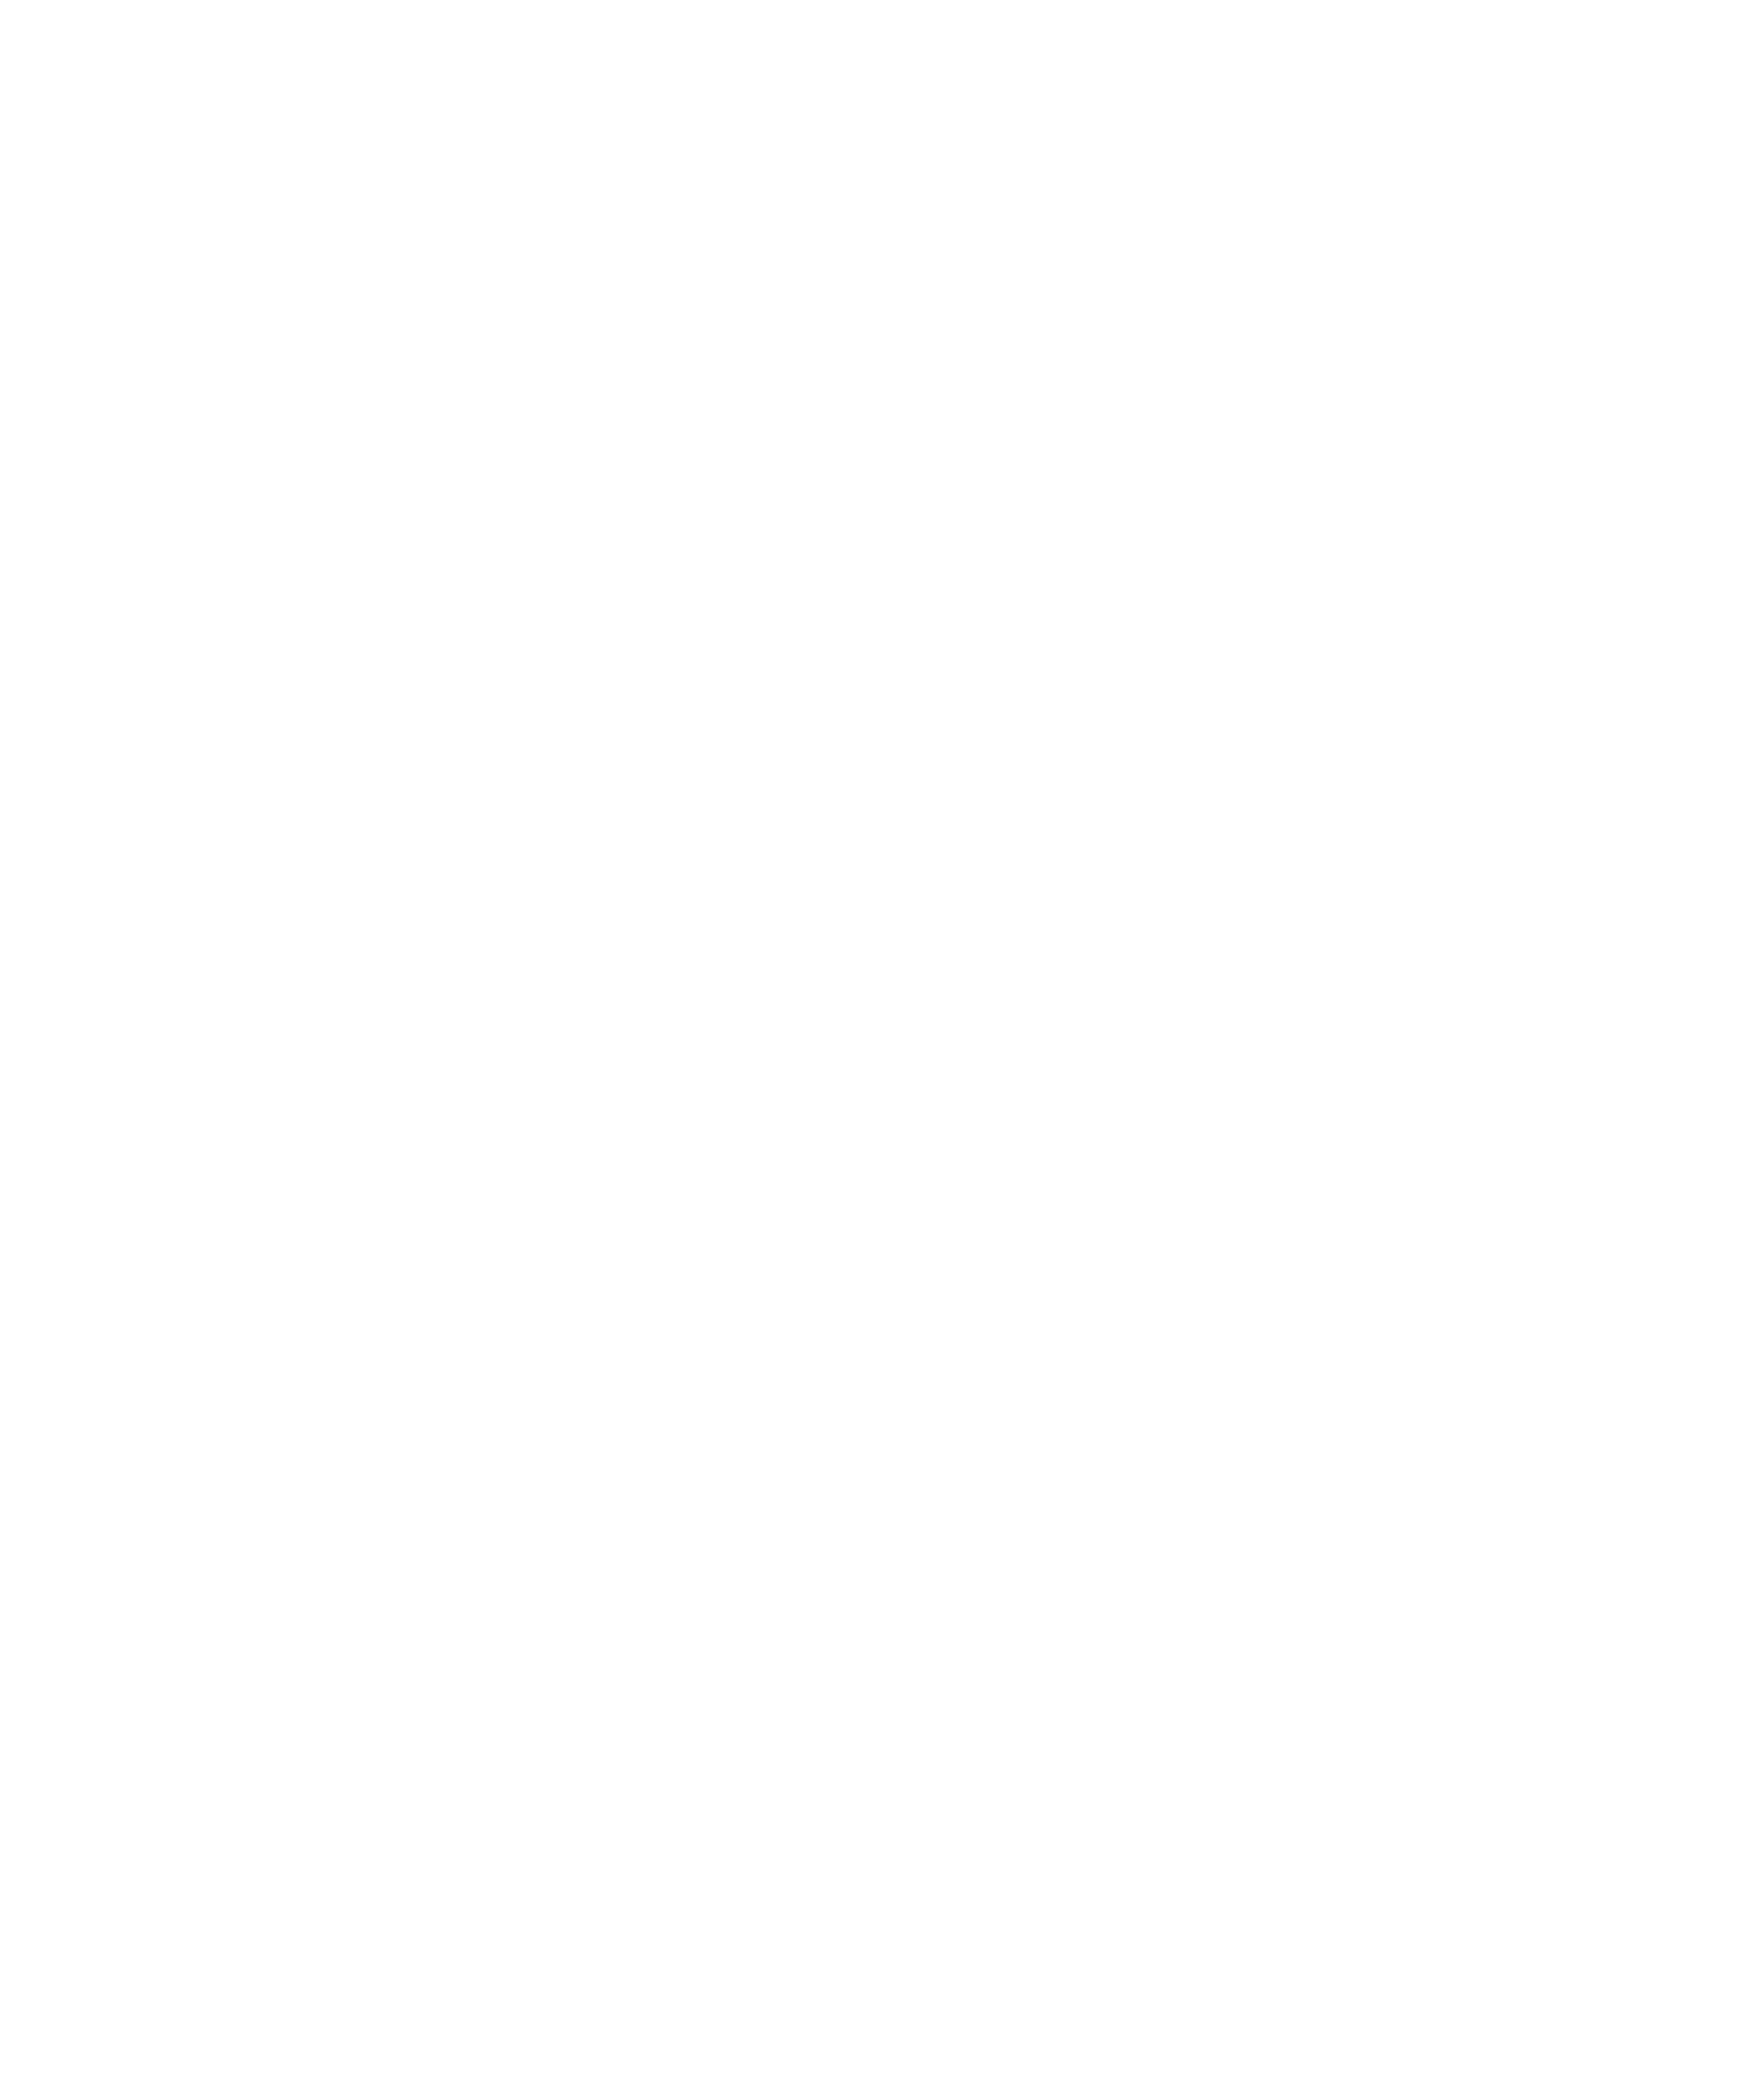 Ngarukuruwala